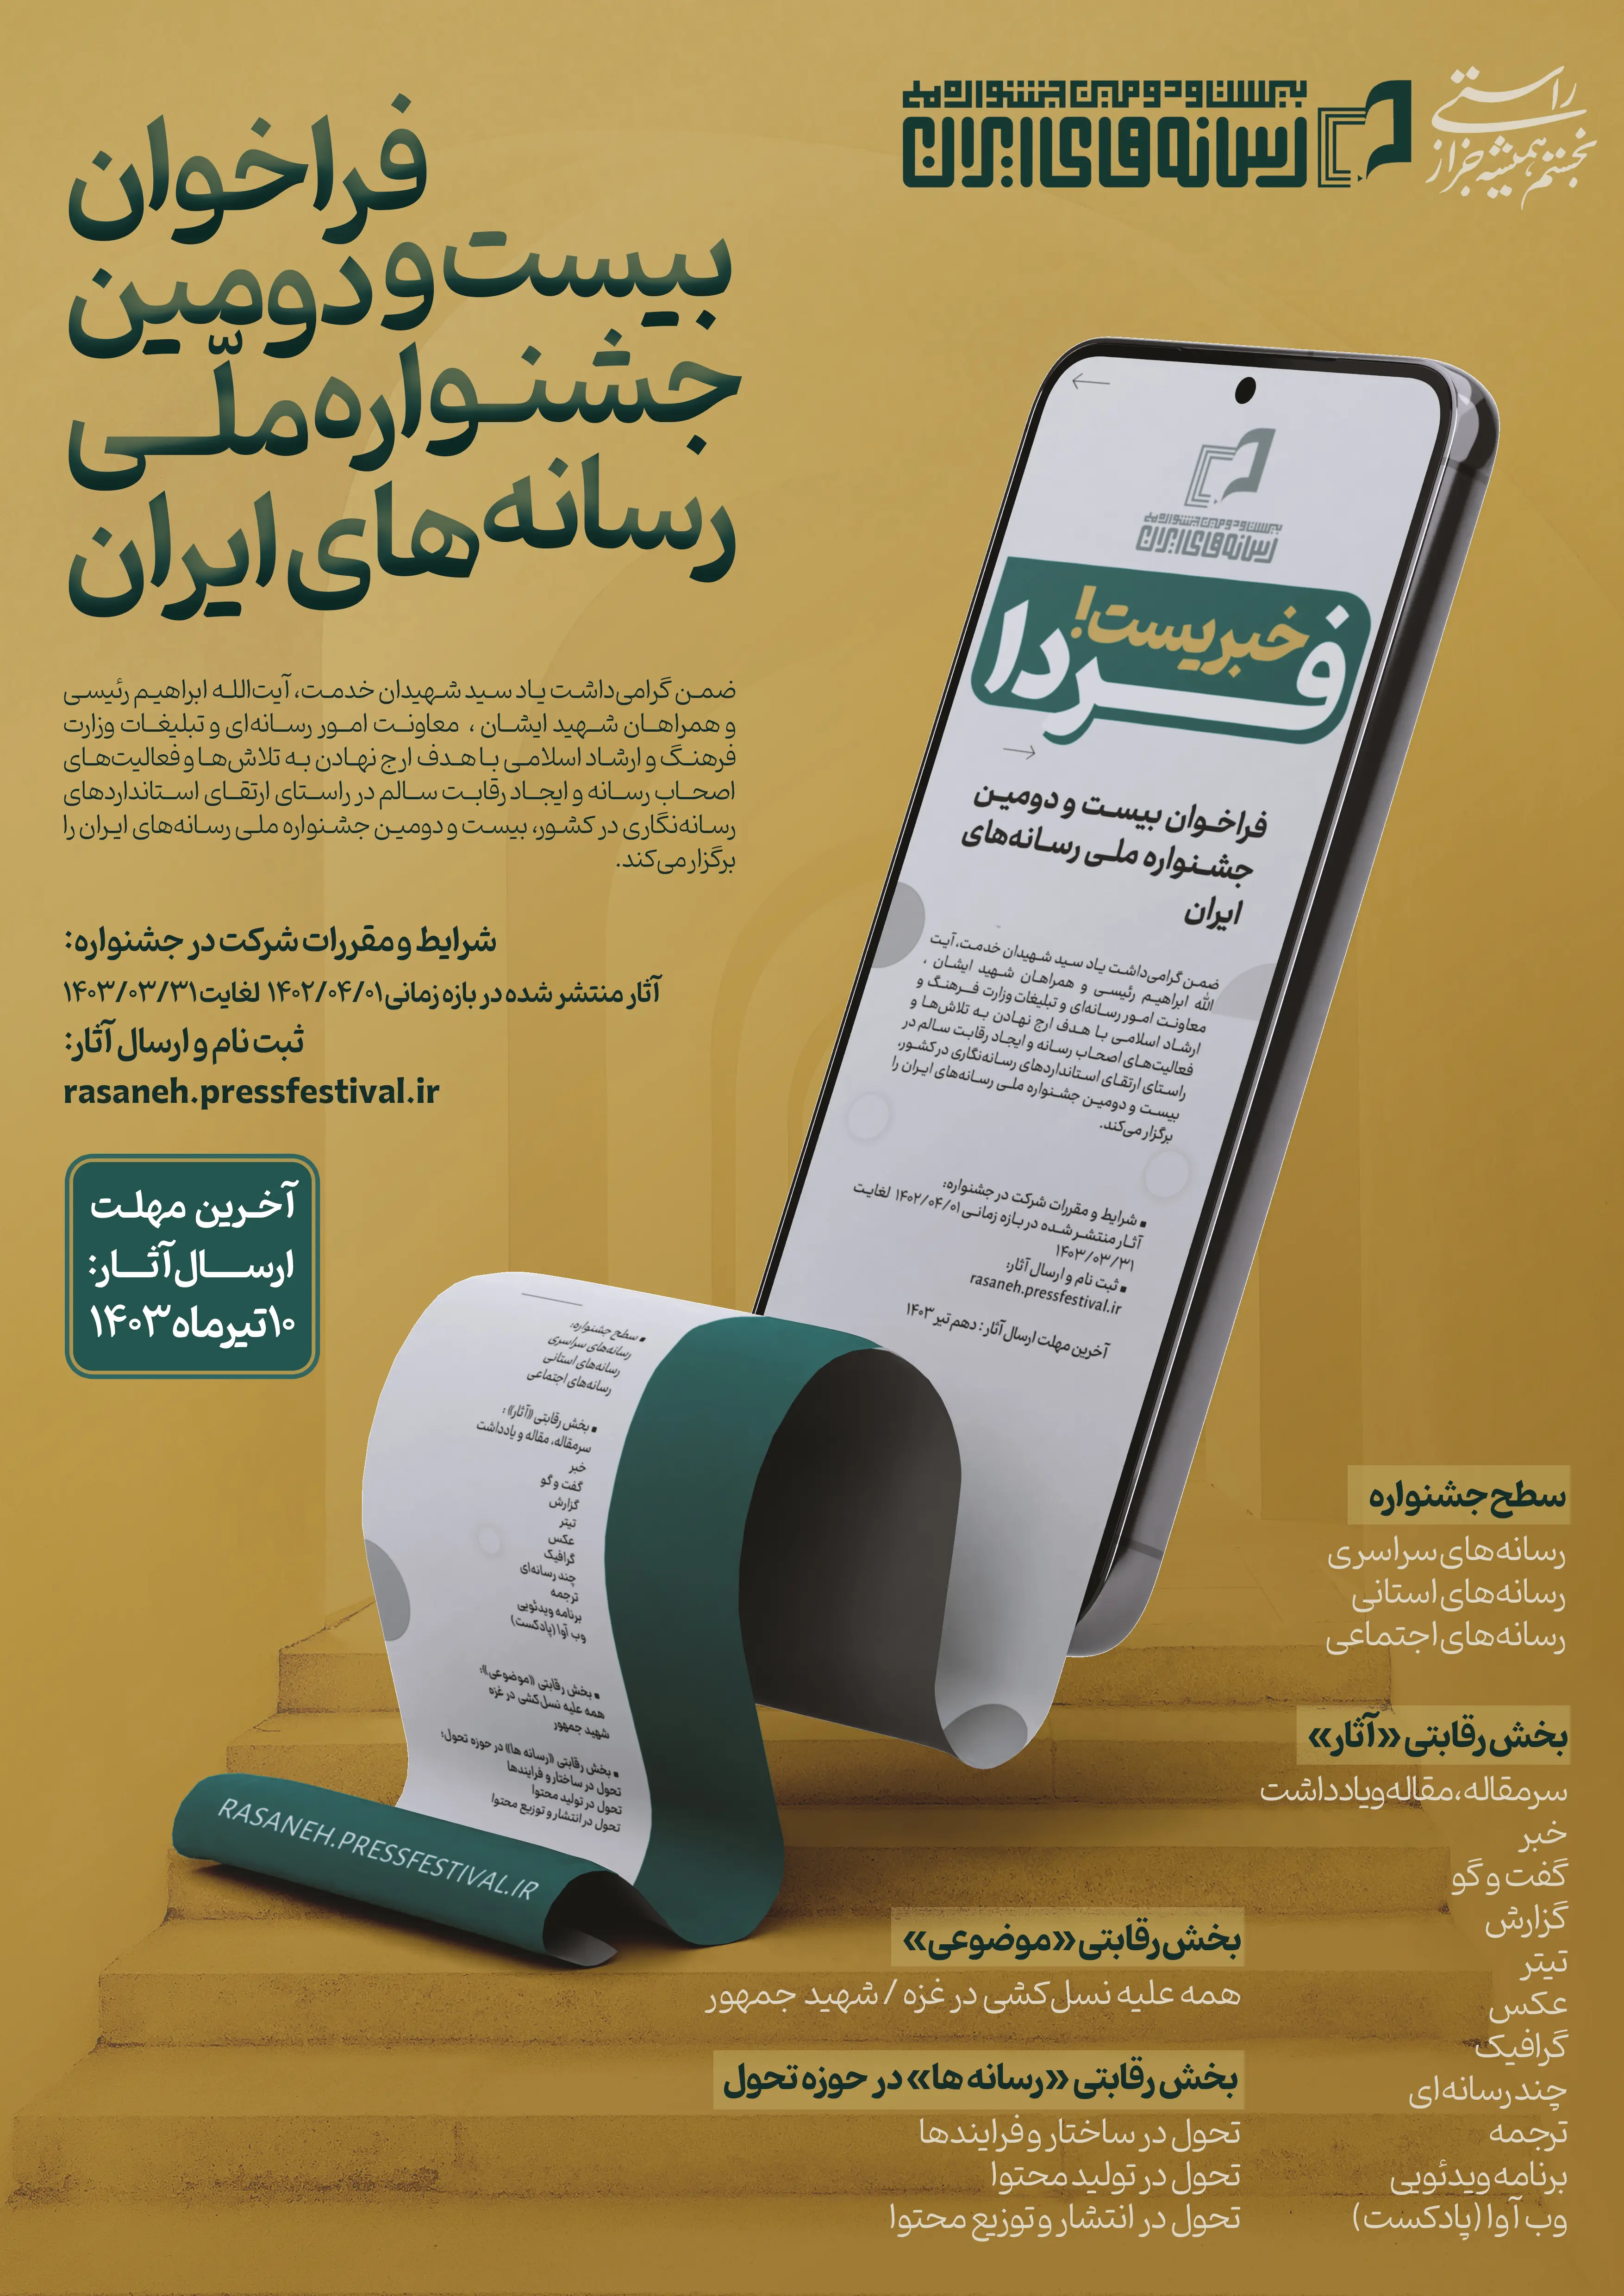 فراخوان بیست و دومین جشنواره ملی رسانه های ایران 1